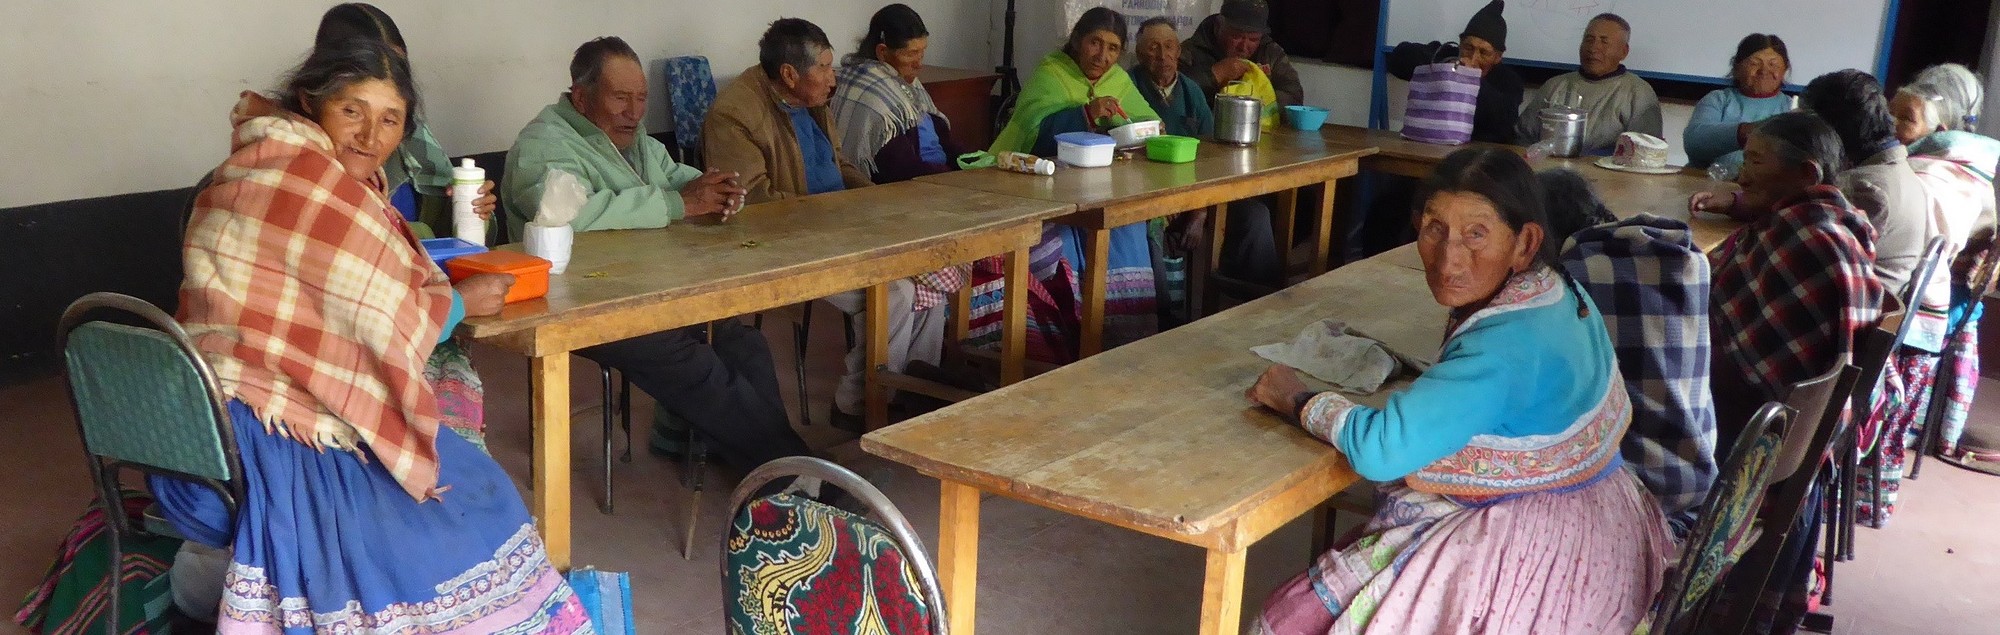 Alten-Ausspeisung in Peru